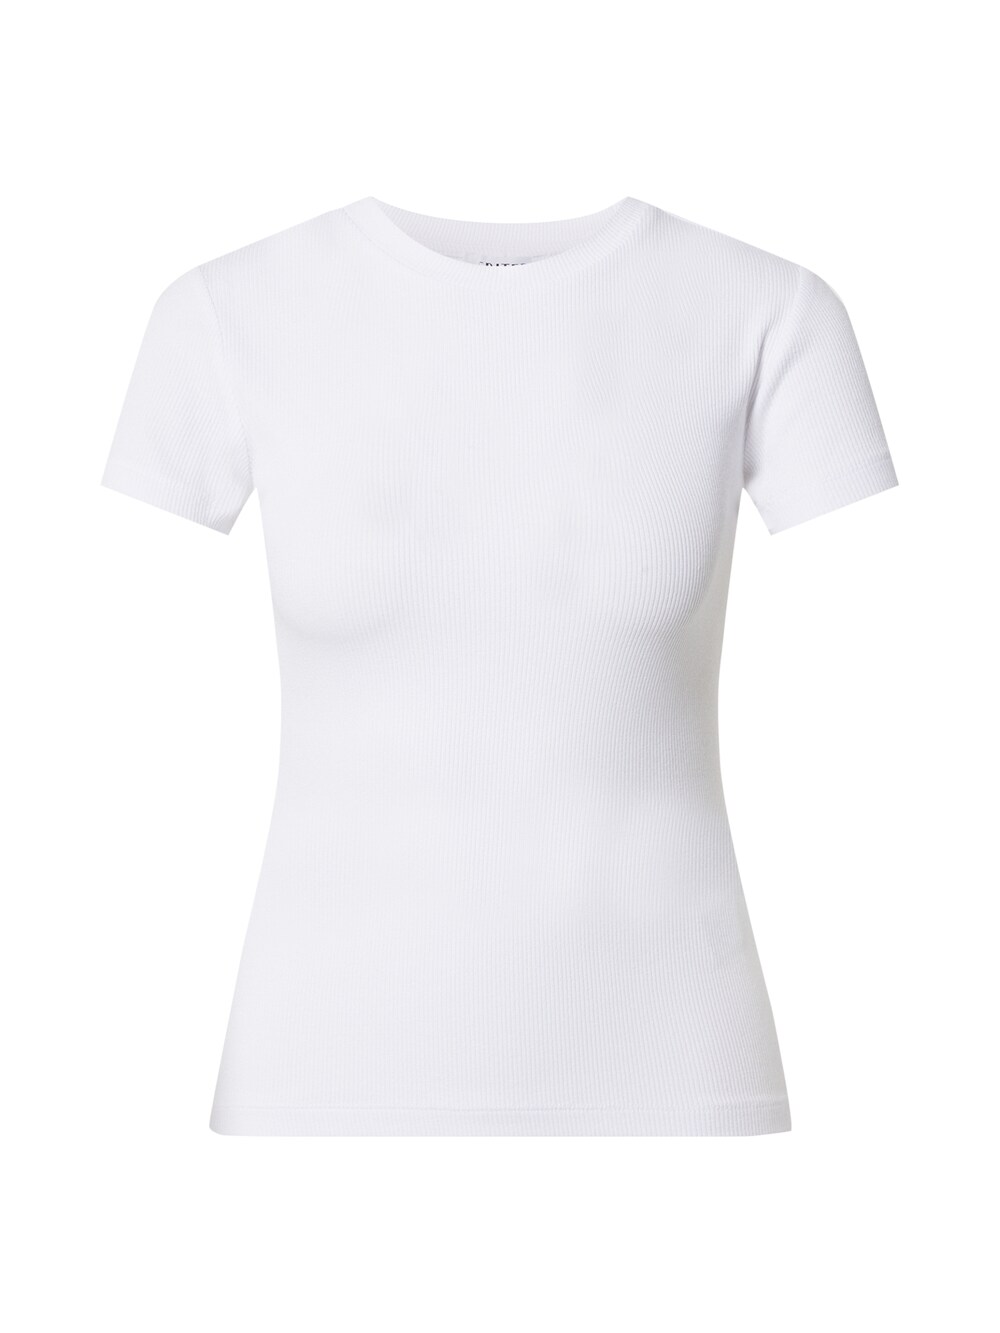 Рубашка EDITED Naara, белый рубашка edited oxana белый